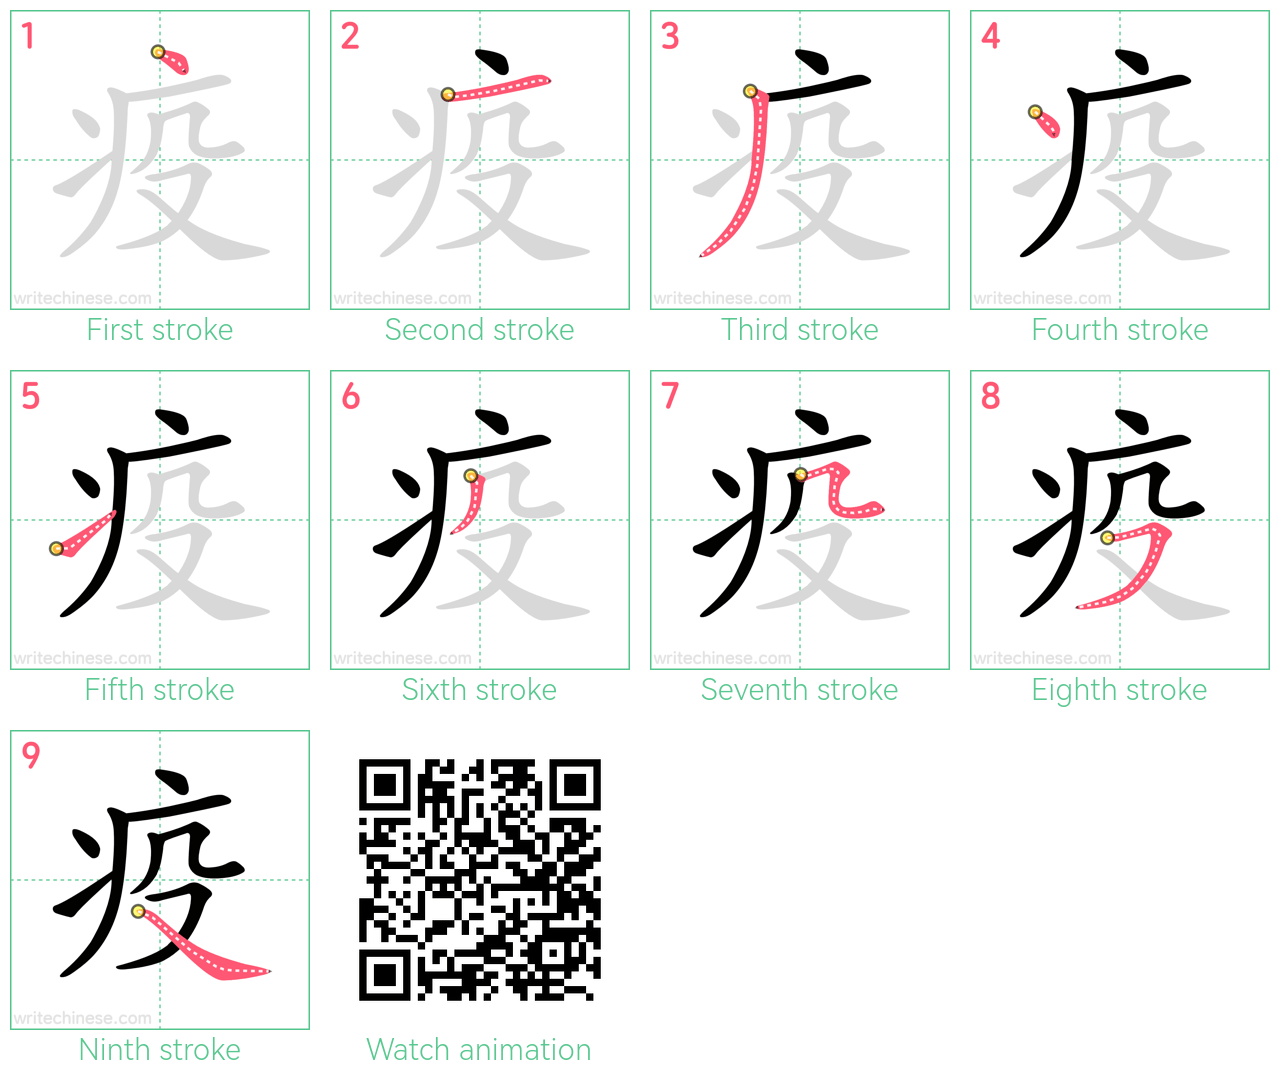 疫 step-by-step stroke order diagrams